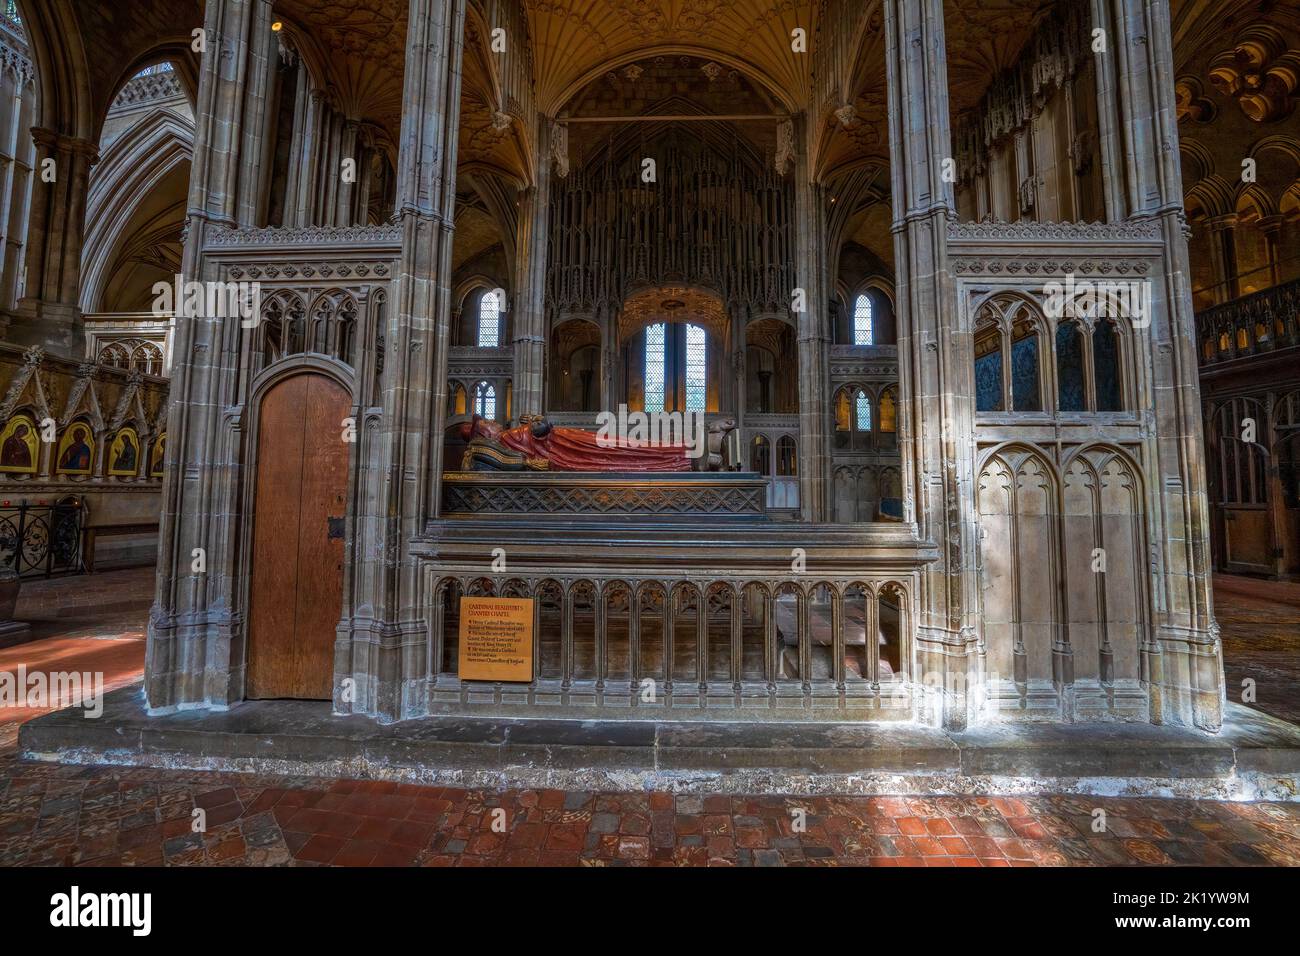 La tumba del Cardenal Beaufortat 1477 en la Catedral de Winchester, Winchester, Hampshire, Inglaterra, Reino Unido Foto de stock